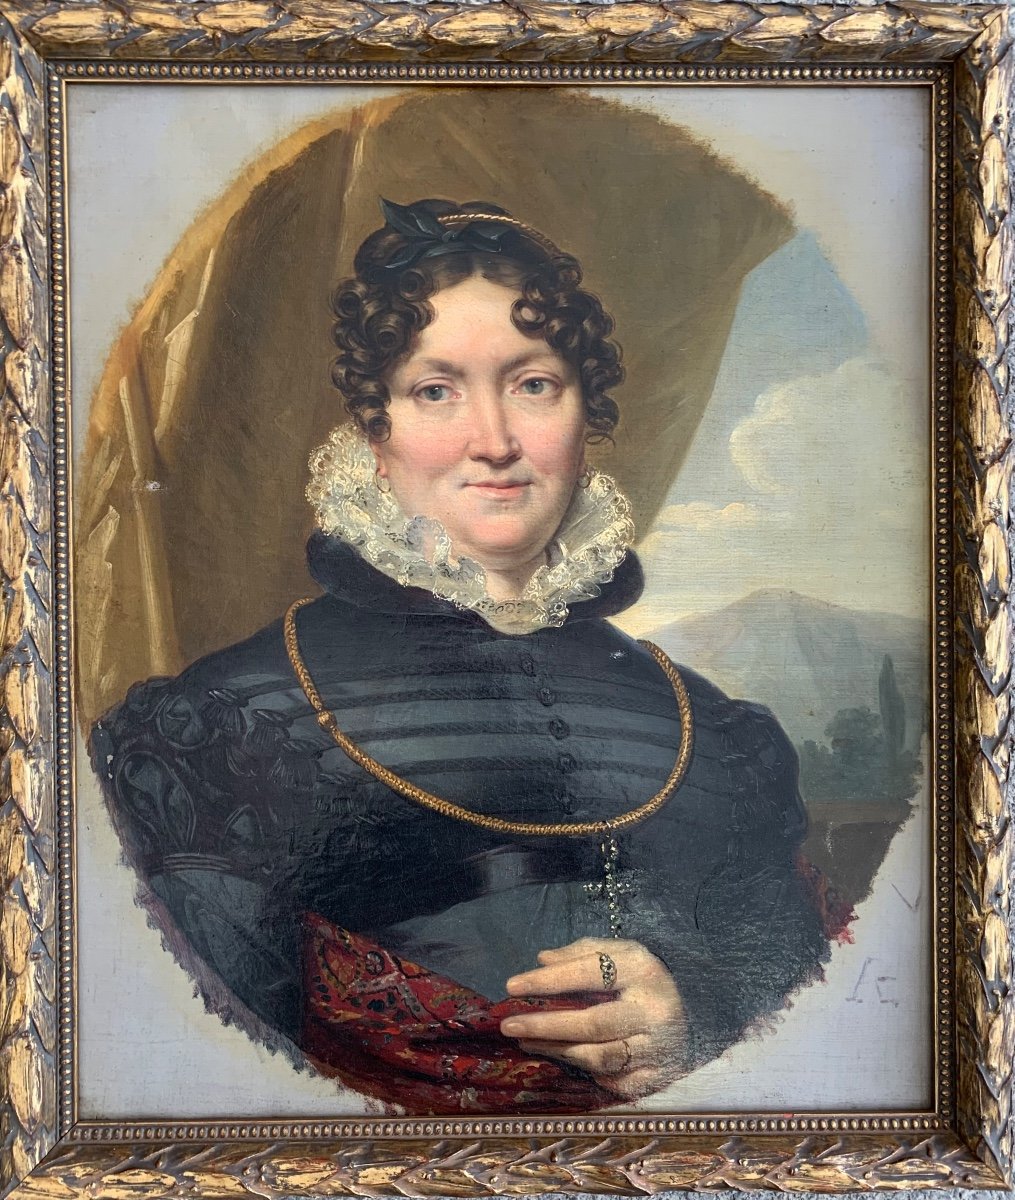 Ca. 1820 Ritratto di donna. Léon Cogniet (1794-1880, Parigi), attribuito.